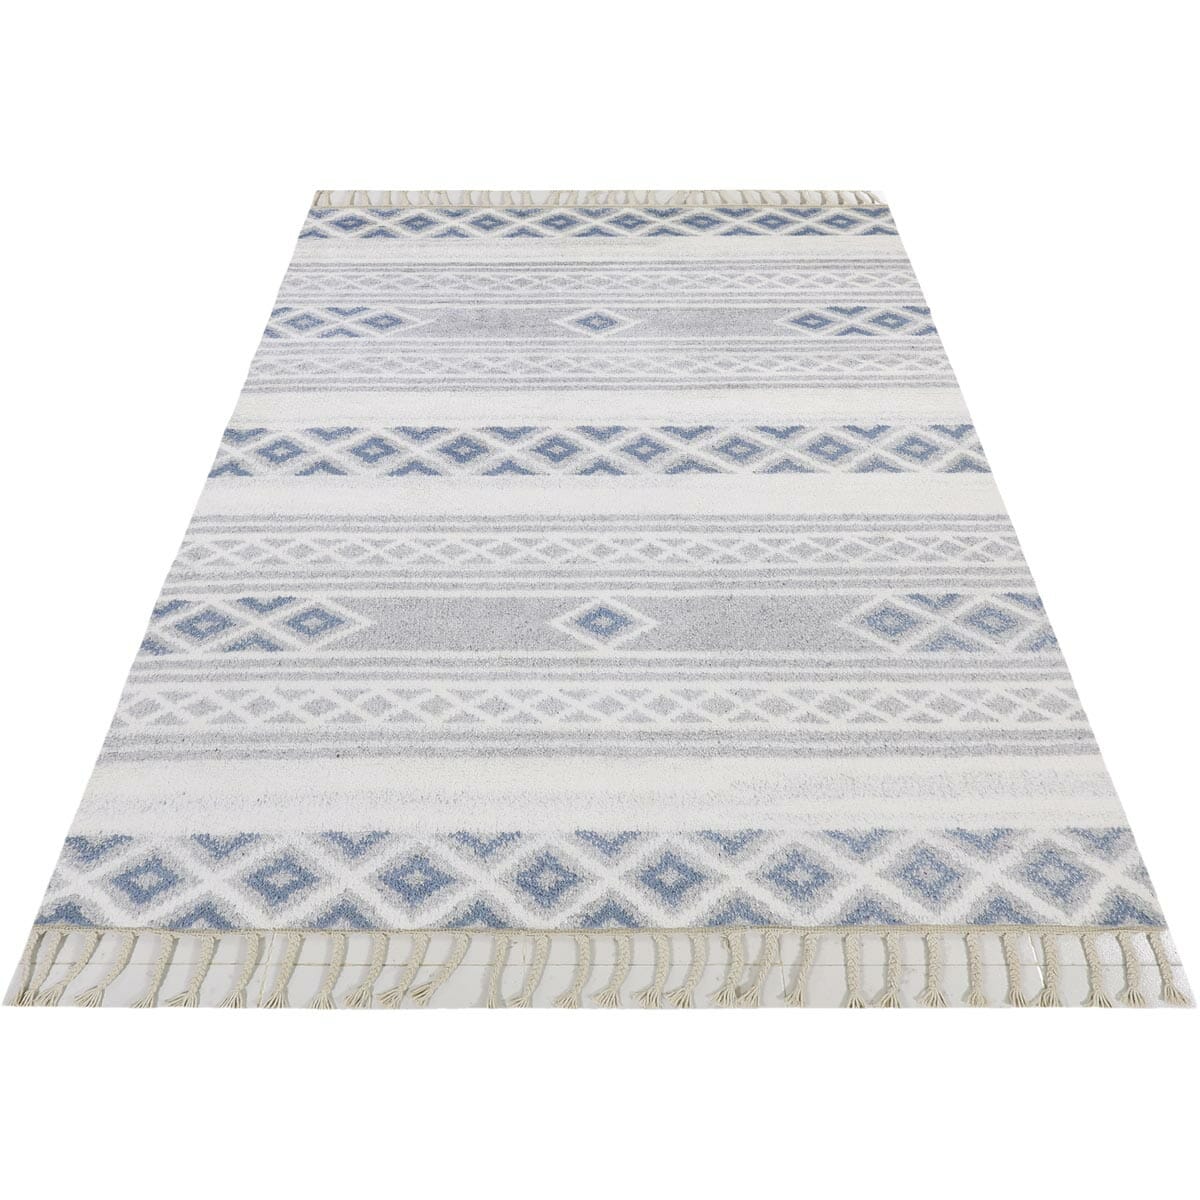 שטיח ברבר מרוקאי 04 כחול/אפור ראנר עם פרנזים | השטיח האדום